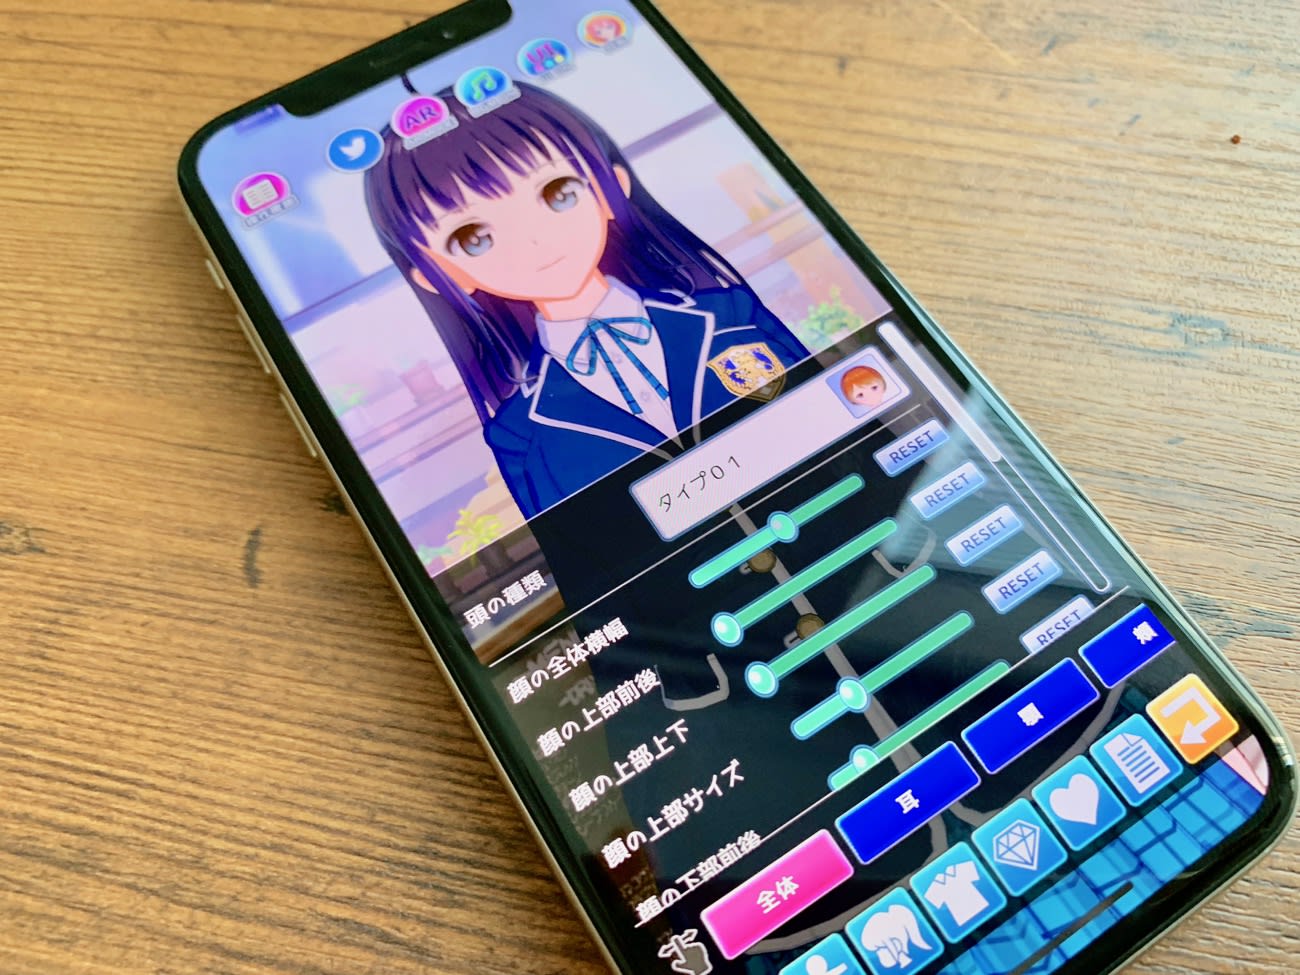 Iphoneで3dキャラ作成 Vtuberアプリ Vカツ Ios版公開 Engadget 日本版